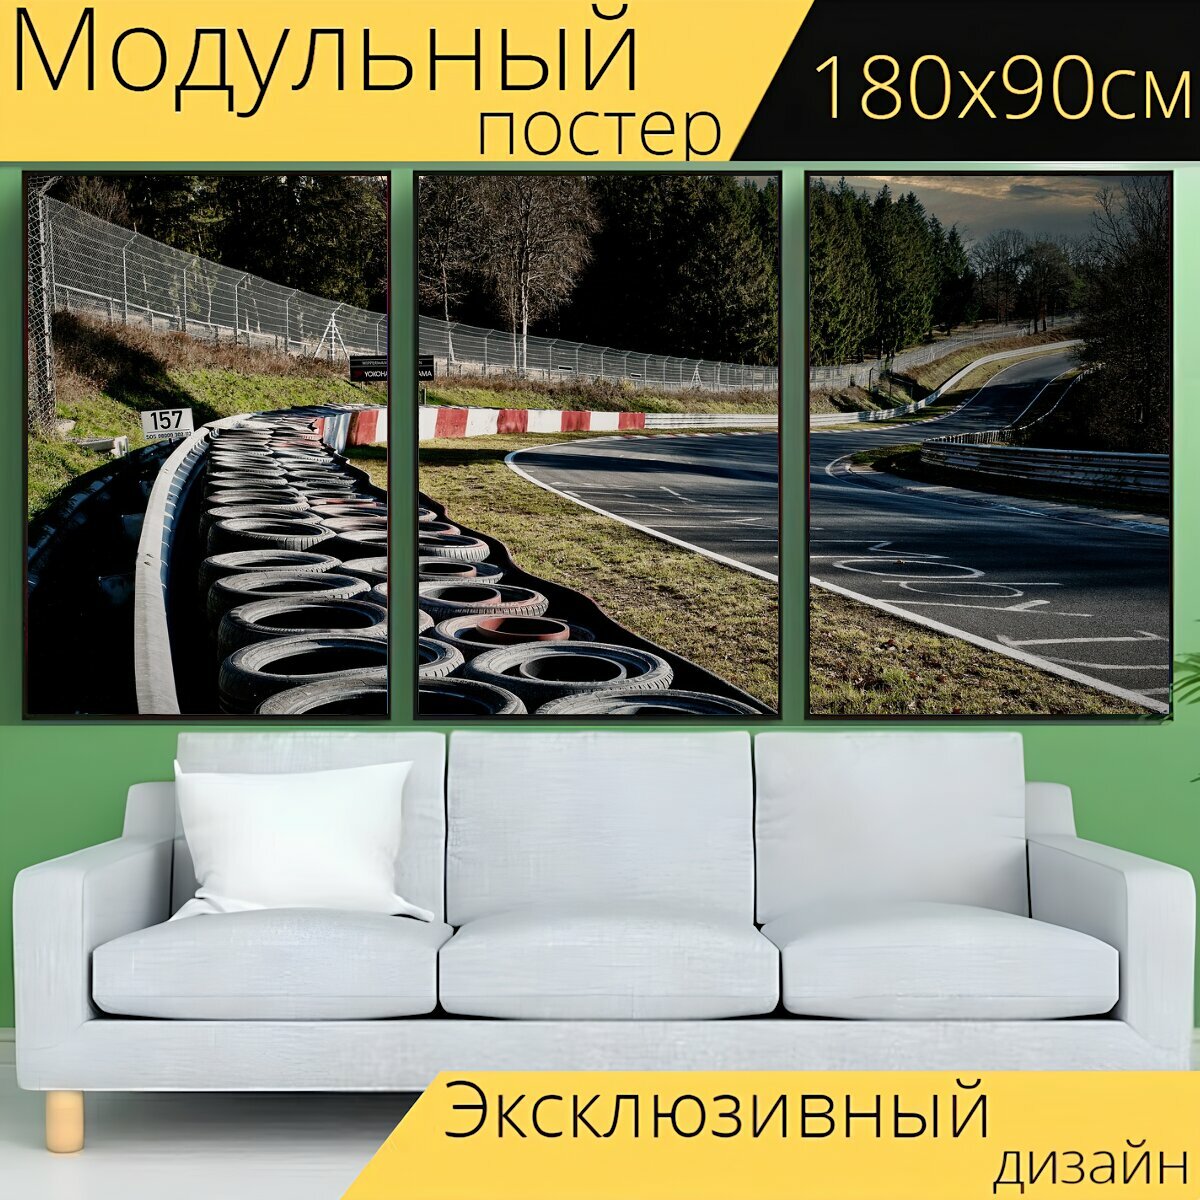 Модульный постер "Гоночная трасса, дорога, изгородь" 180 x 90 см. для интерьера